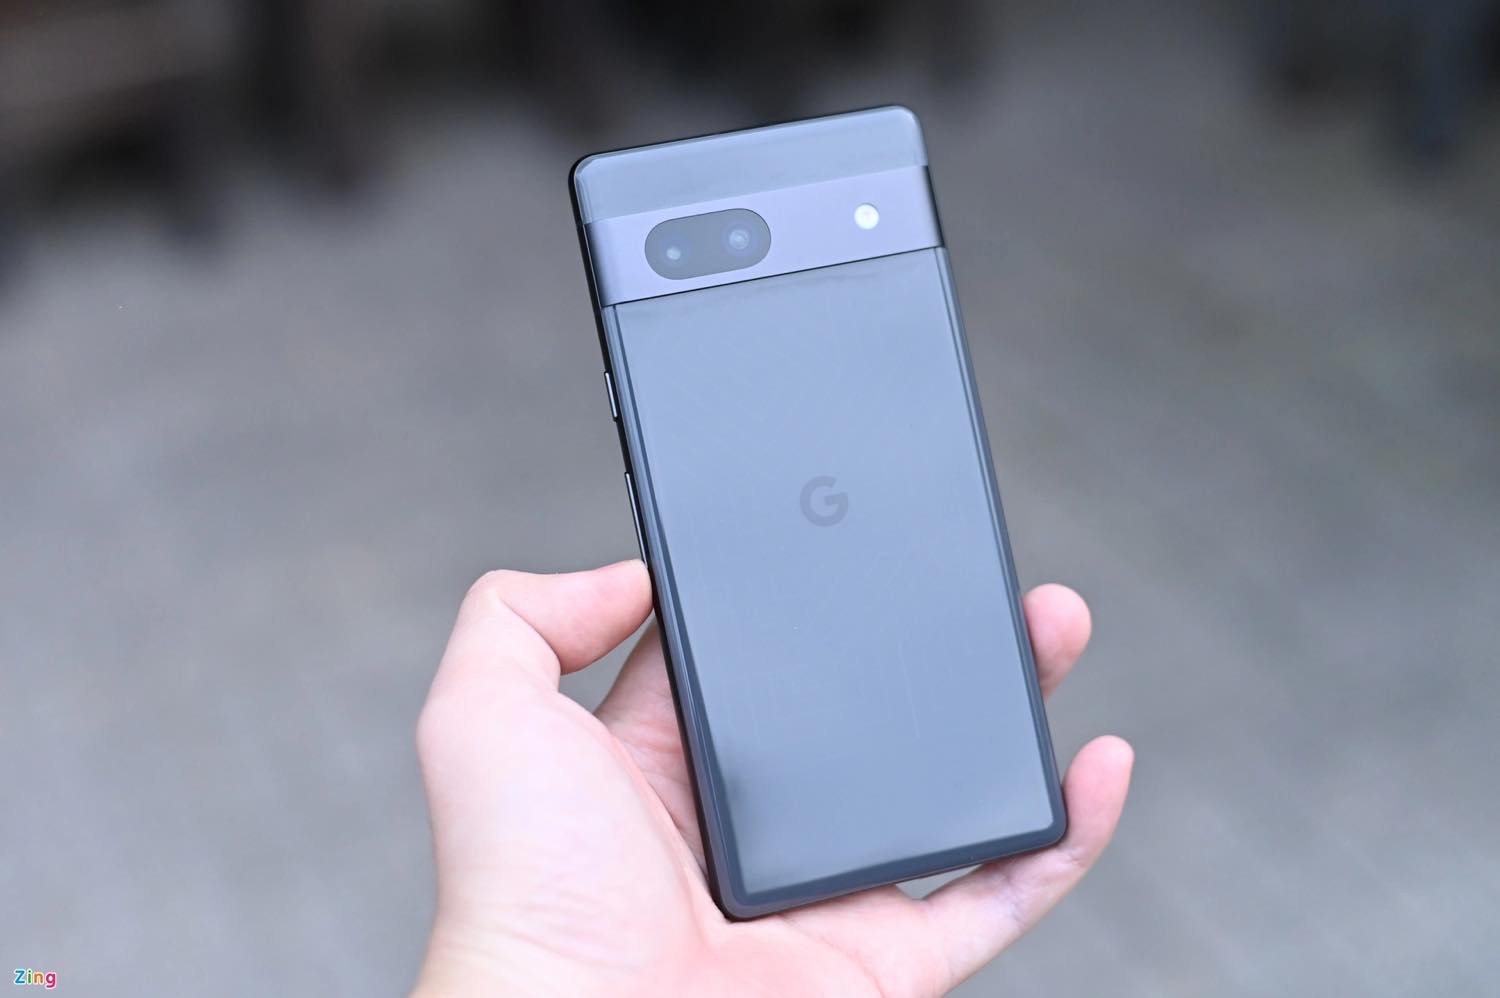 ｢Google Pixel 7a｣は256GBモデルもあり?? ｰ カラーラインナップは5色との噂が浮上